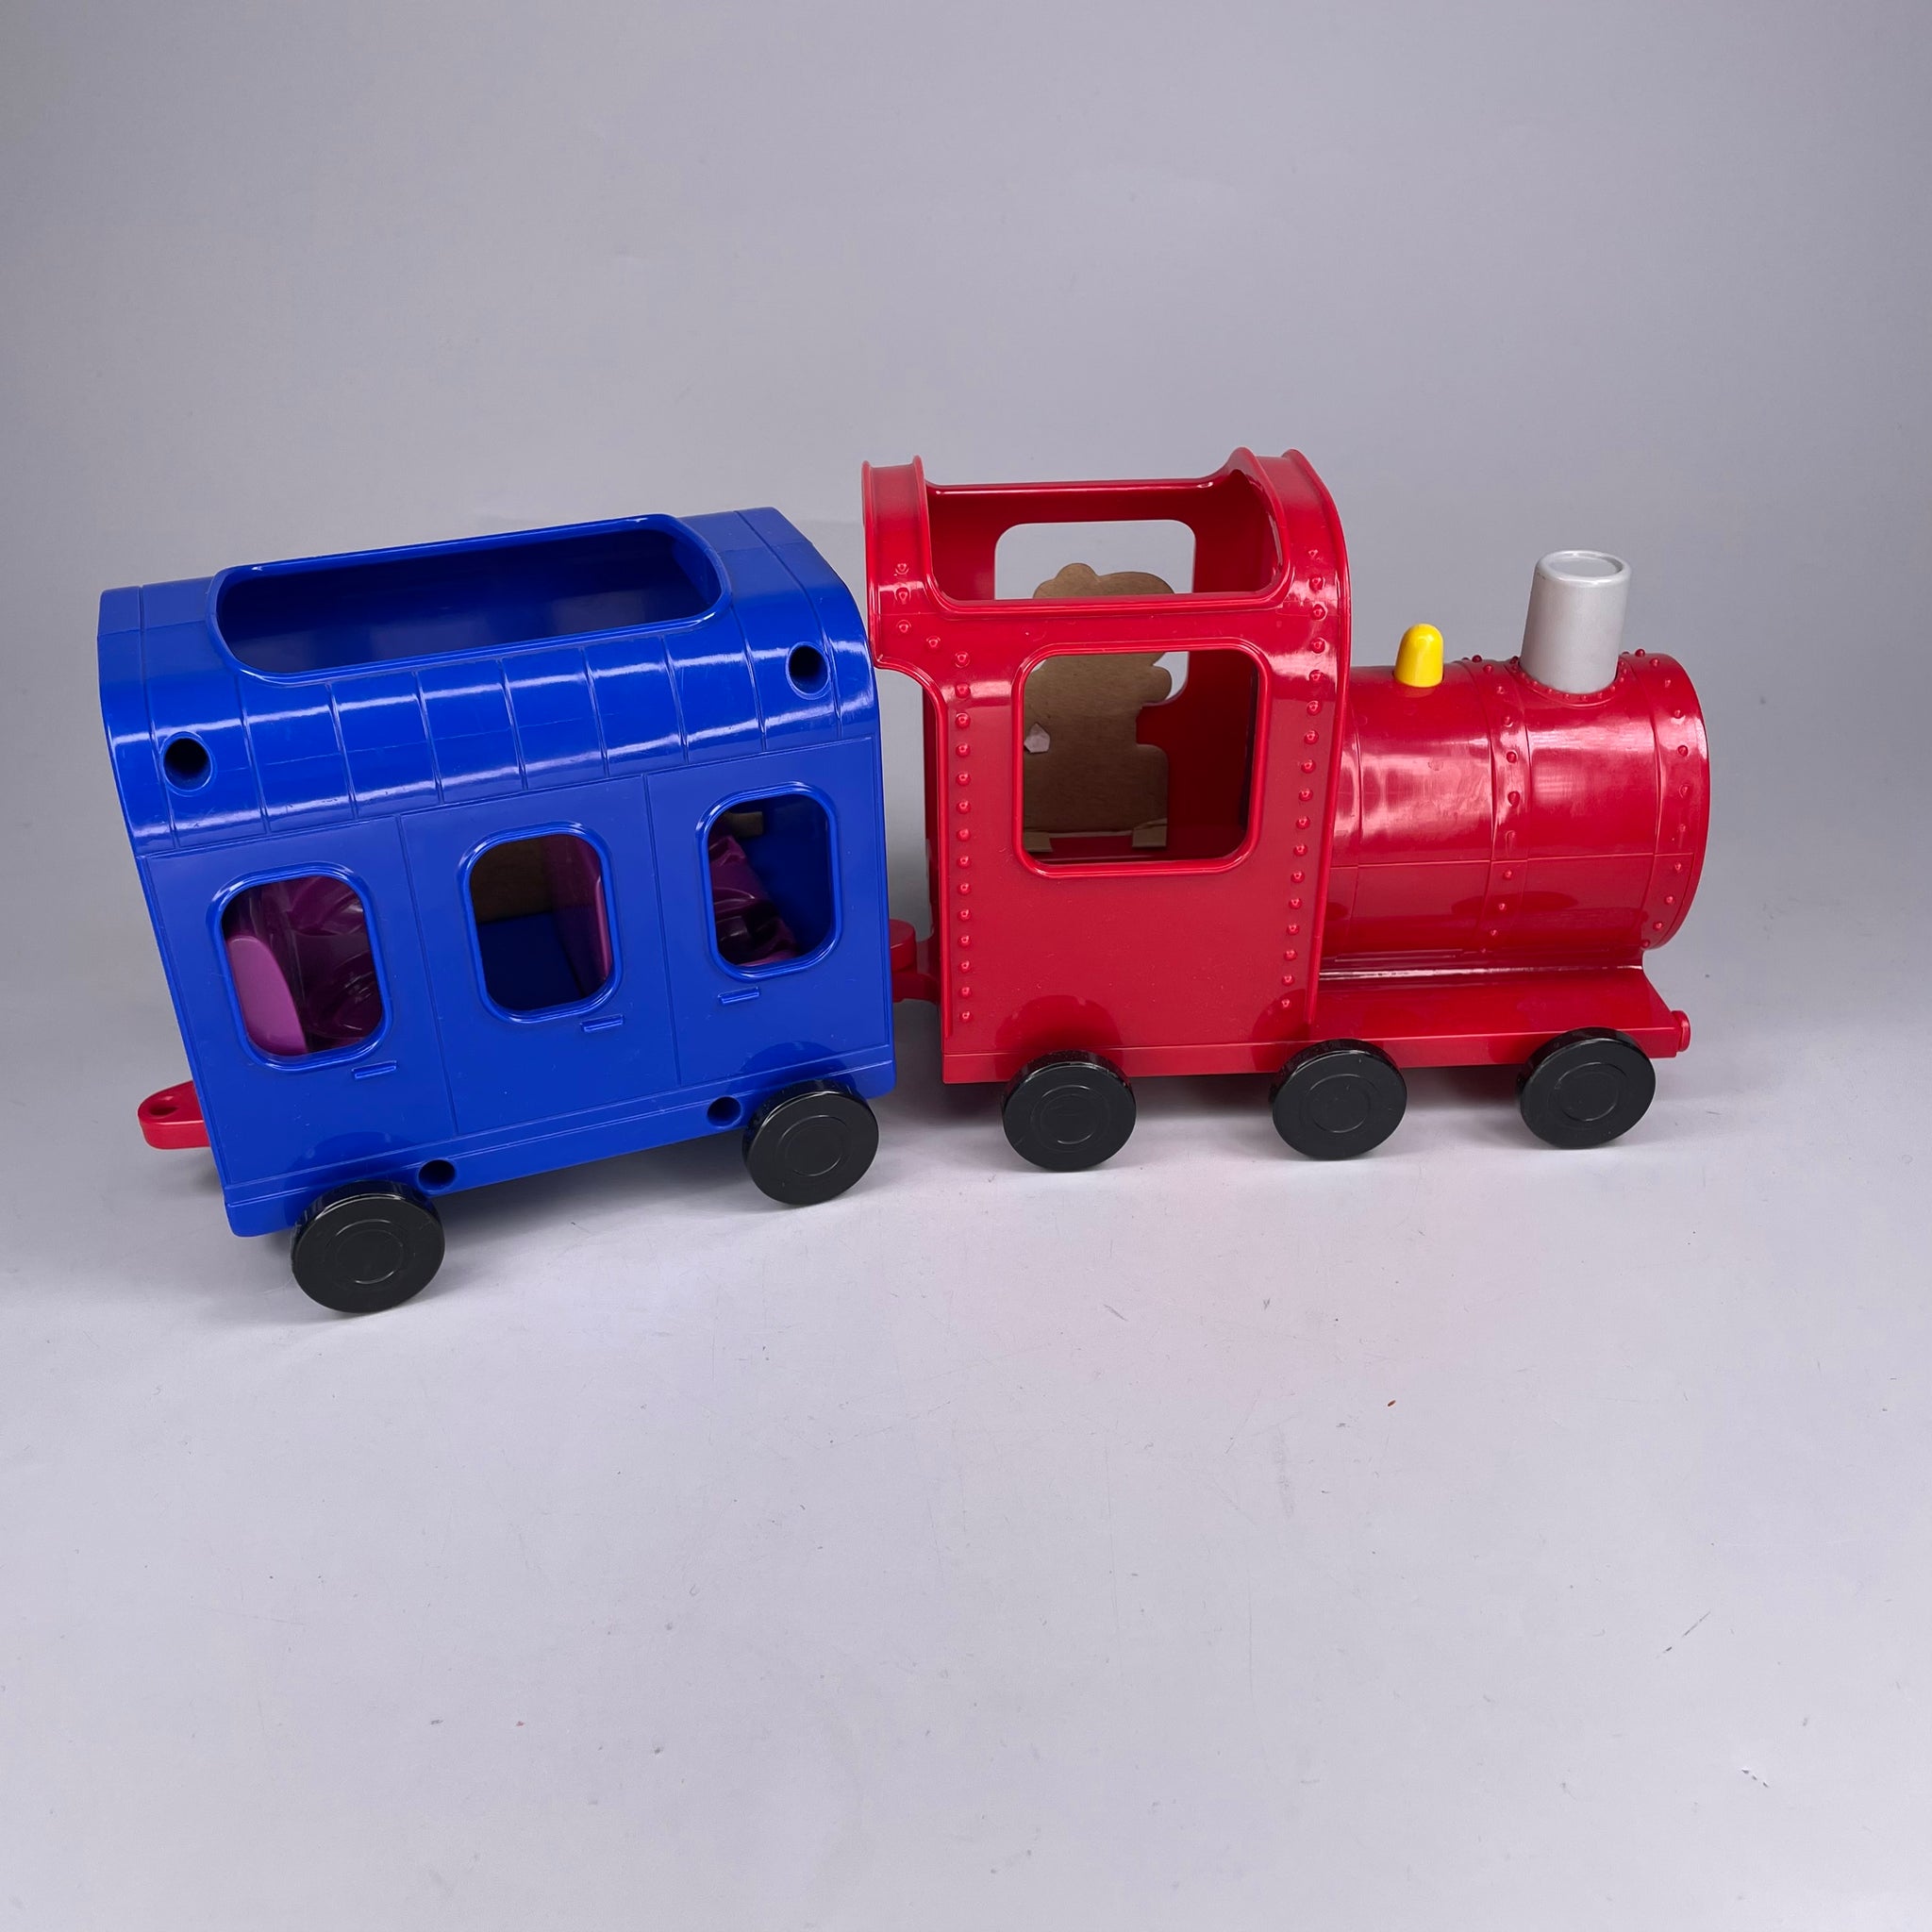 Peppa Pig Peppa Wutz, Pig Bahn / Train rot, blau